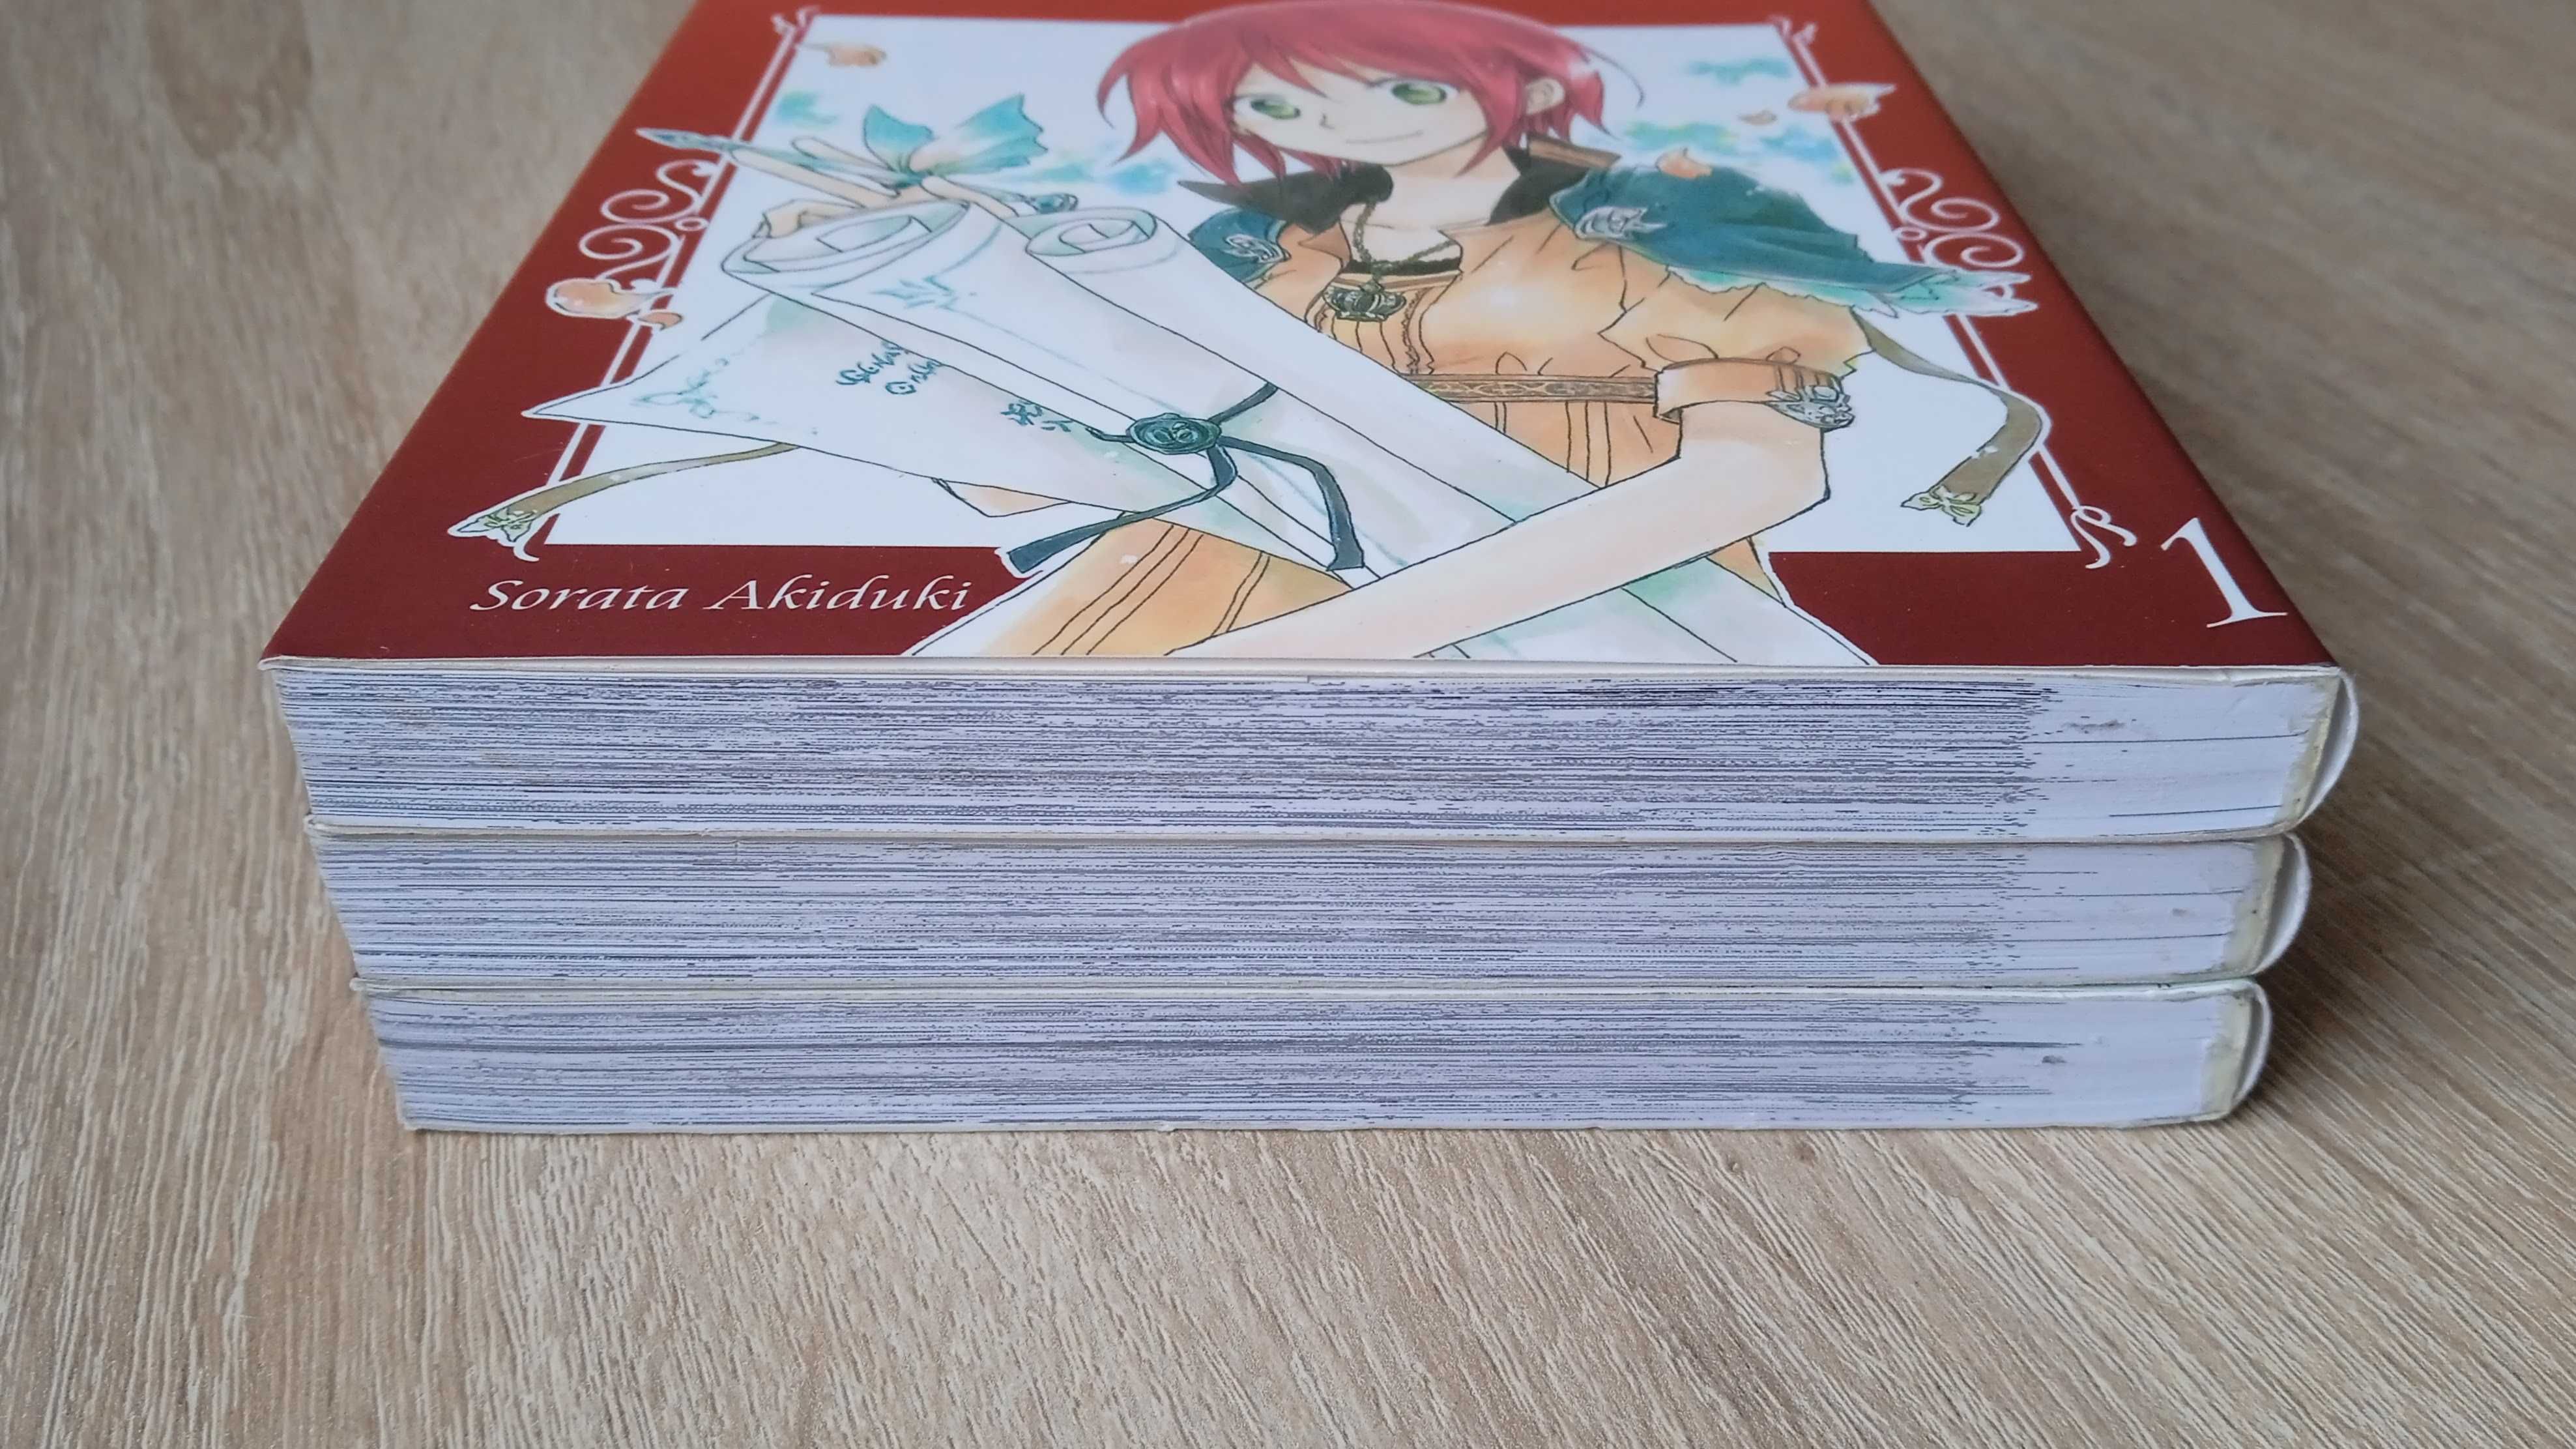 Manga Shirayuki: Śnieżka o czerwonych włosach - tomy 1-3